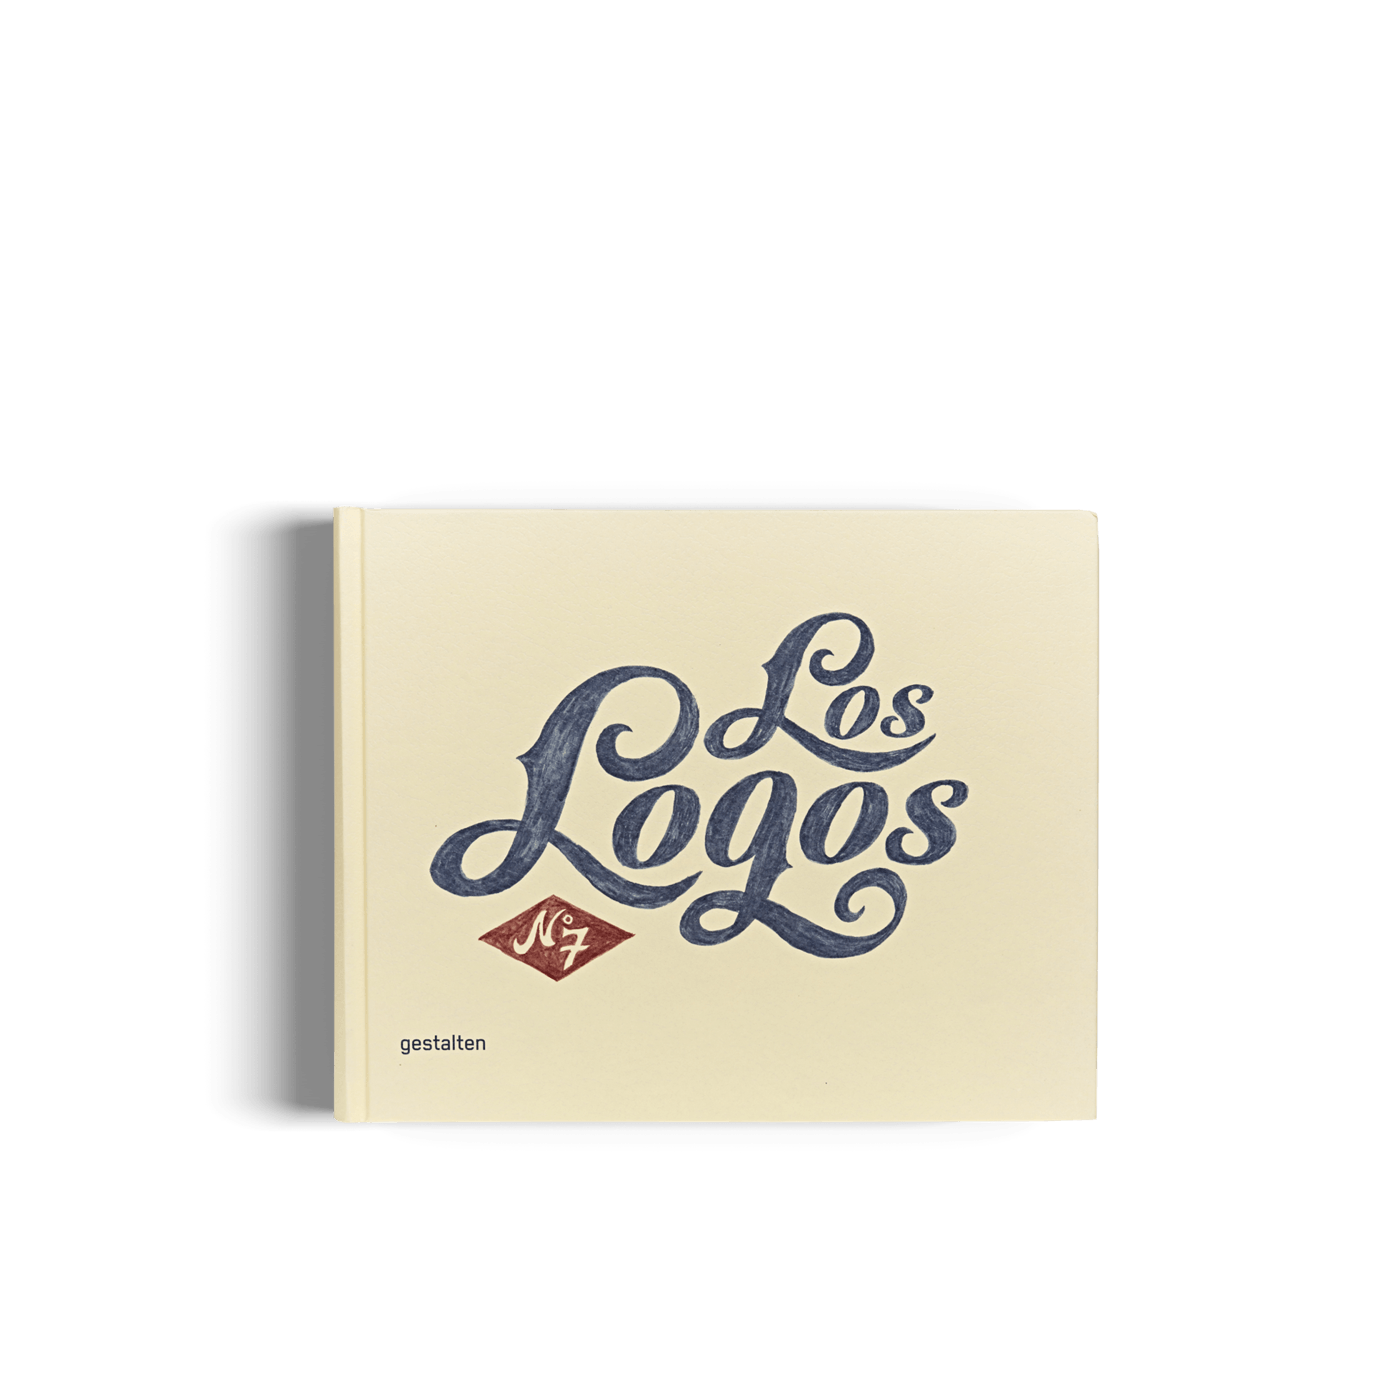 Los Logo - Los Logos 8 - gestalten